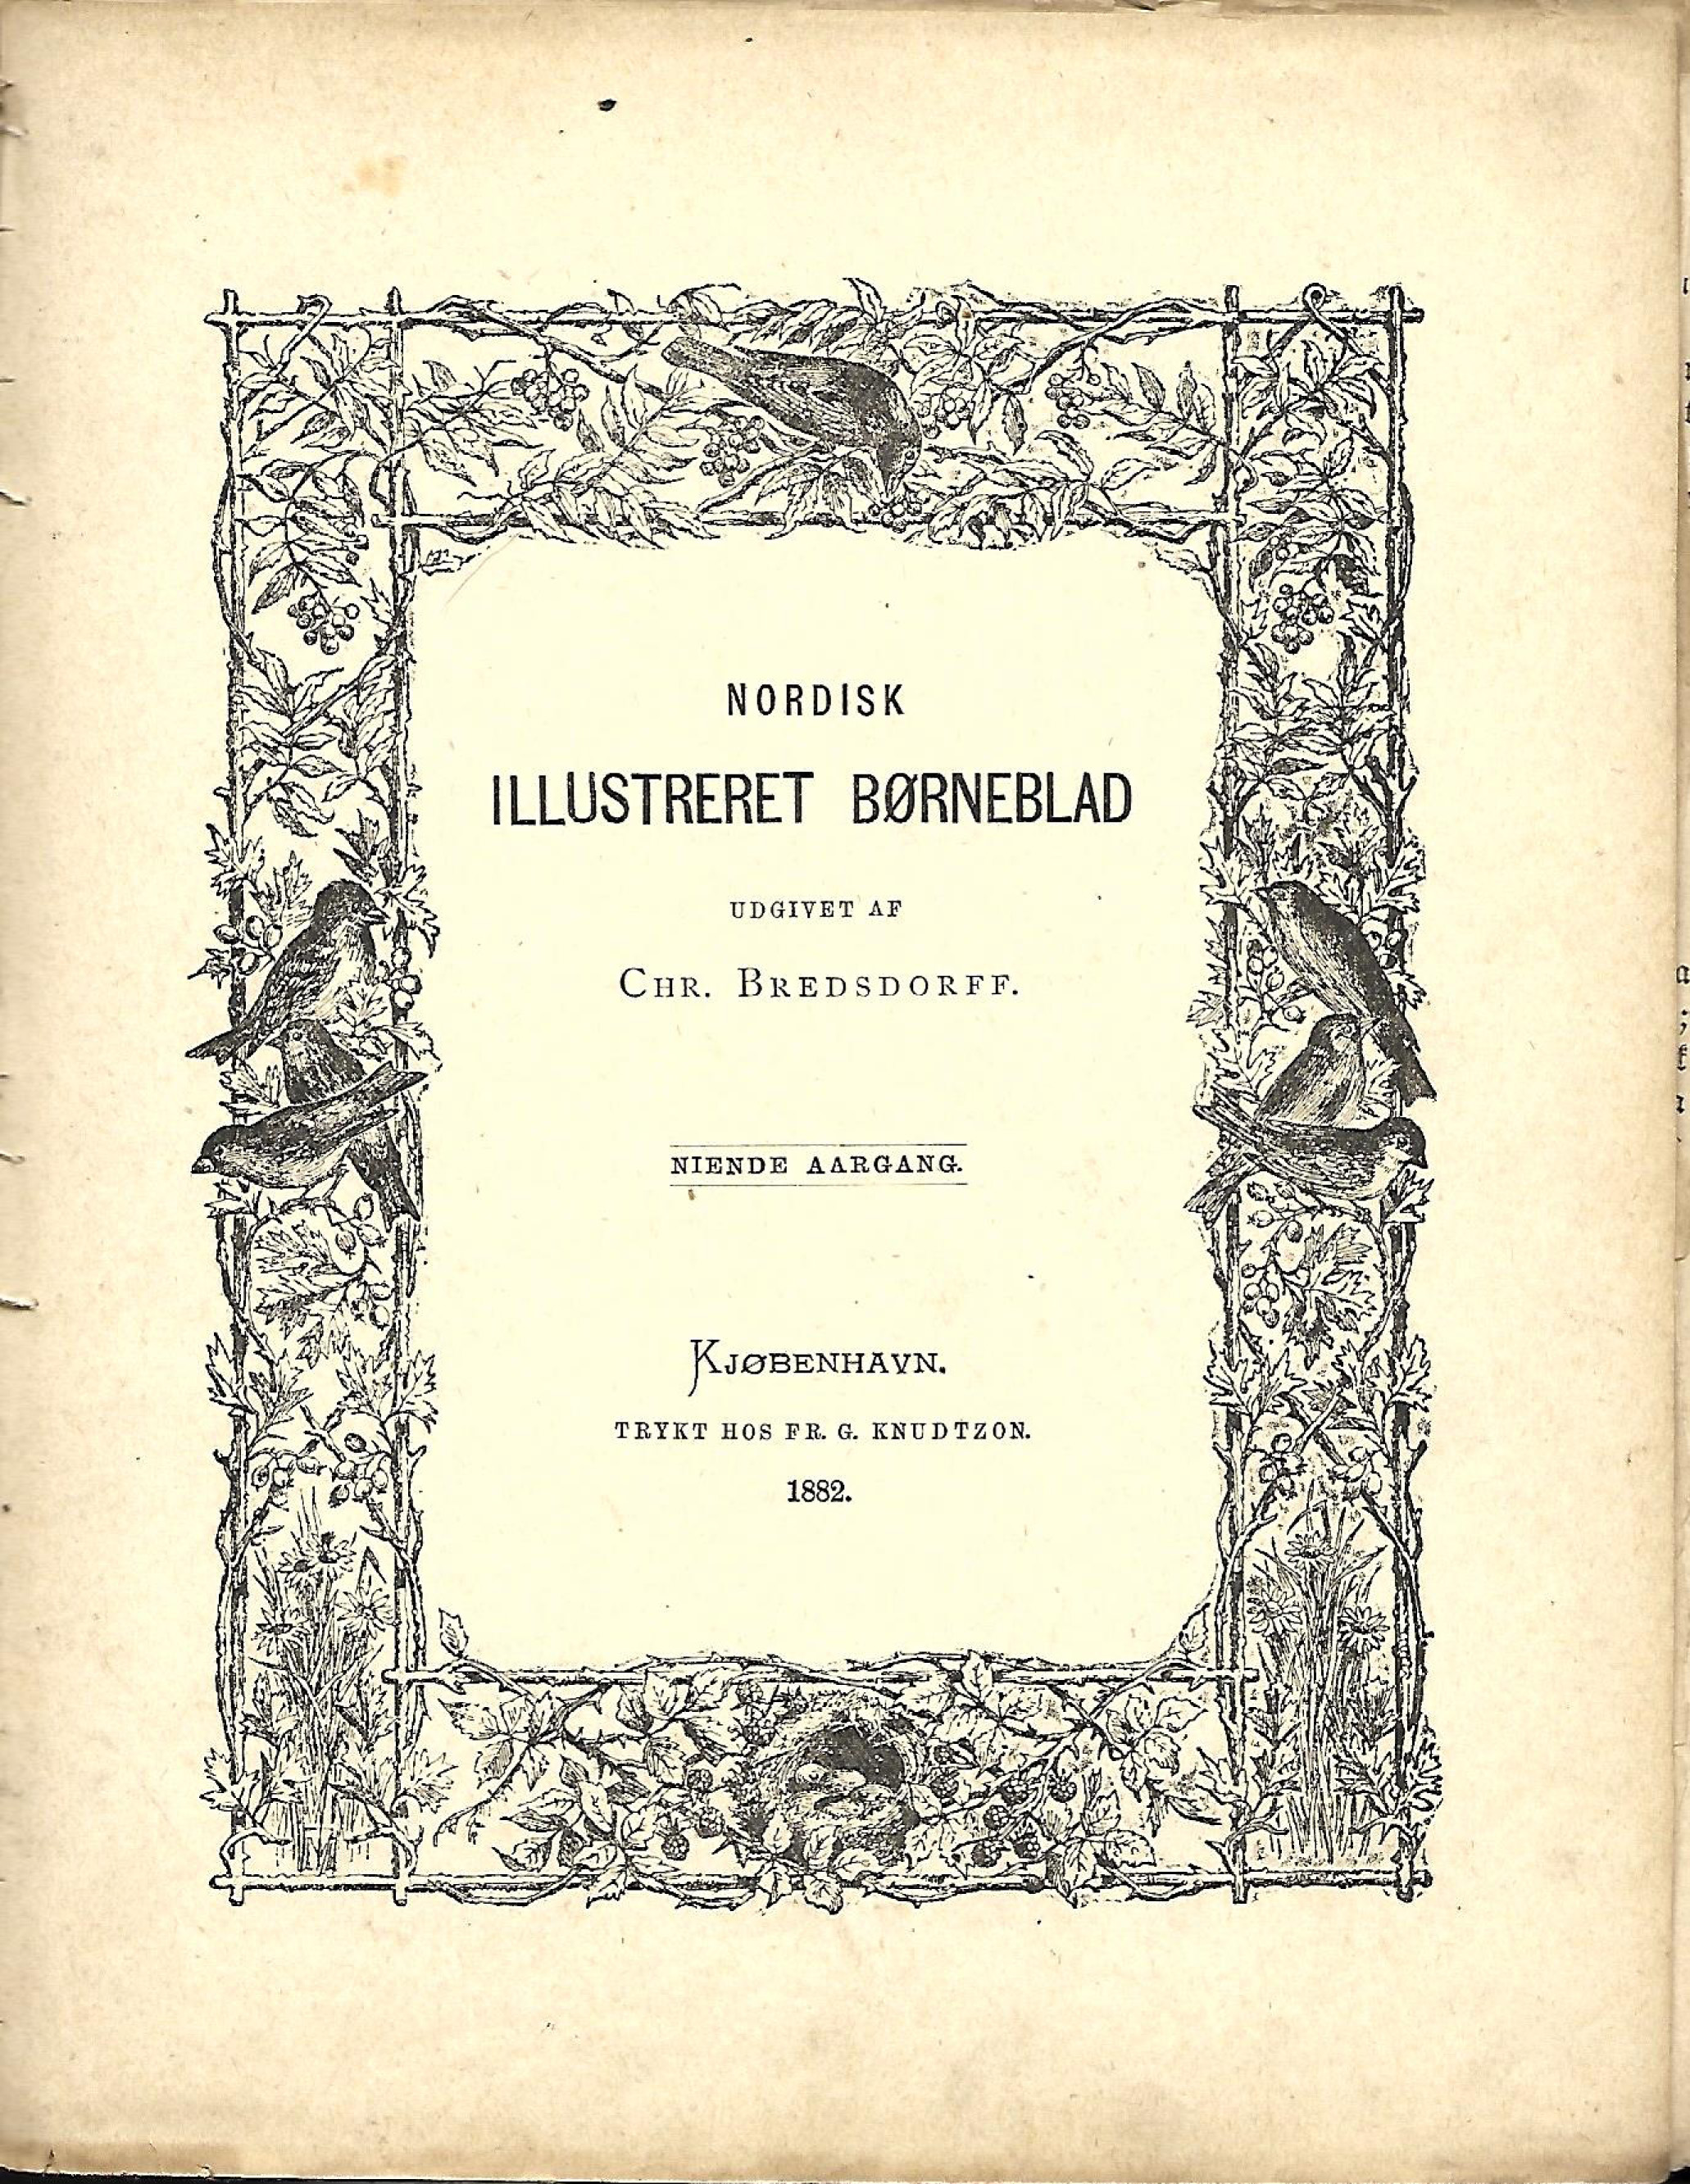 Nordisk Illustreret Børneblad - 9. årgang nr 1-23 1882 og nr 1-23 1883